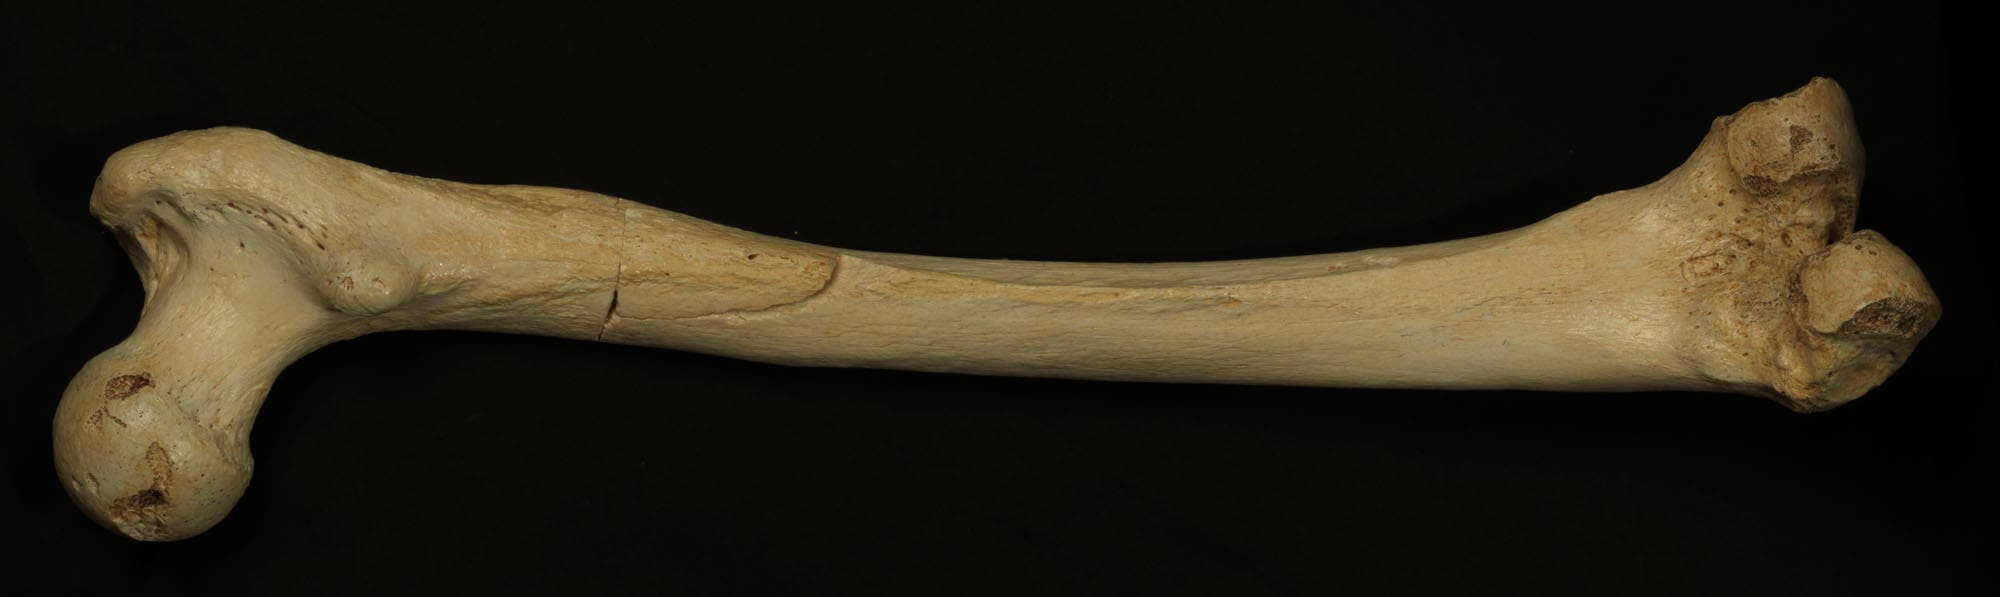 400 000 Jahre alter Homininen-Knochen aus Sima de los Huesos